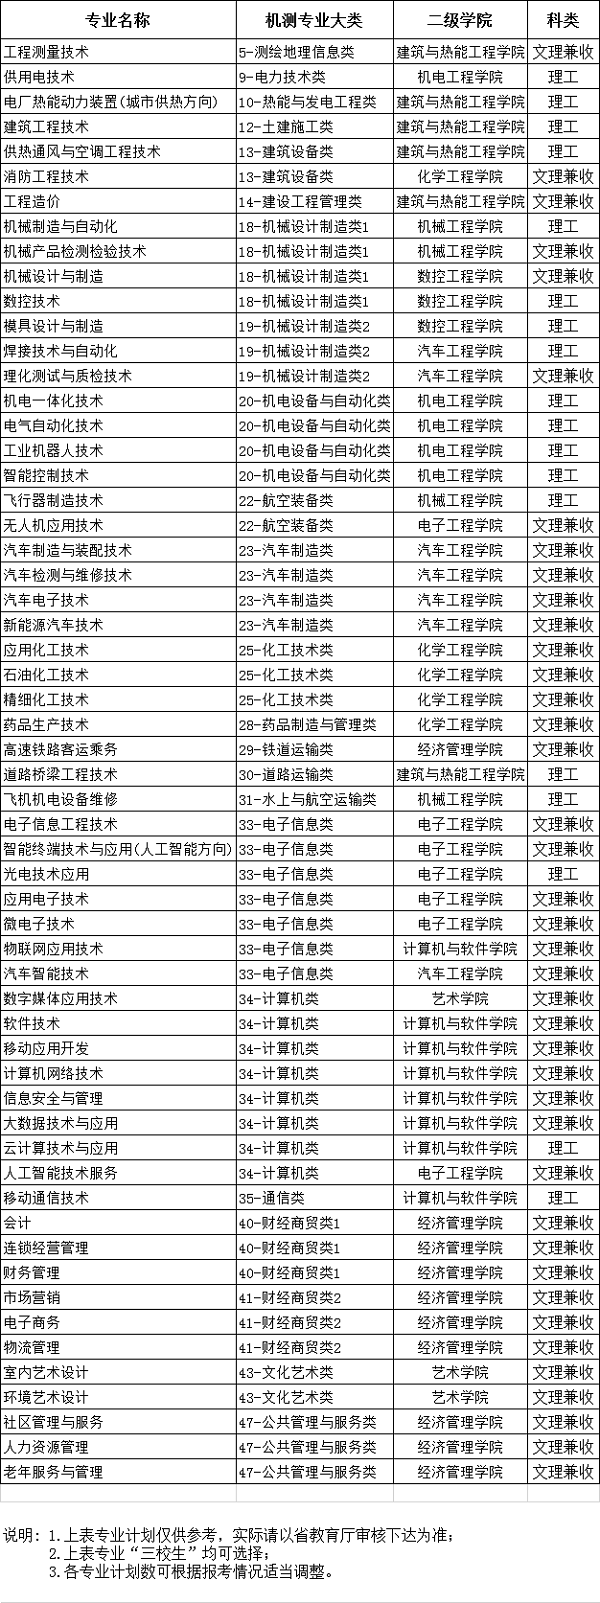 陕西国防工业职业技术学院单独考试招生简章